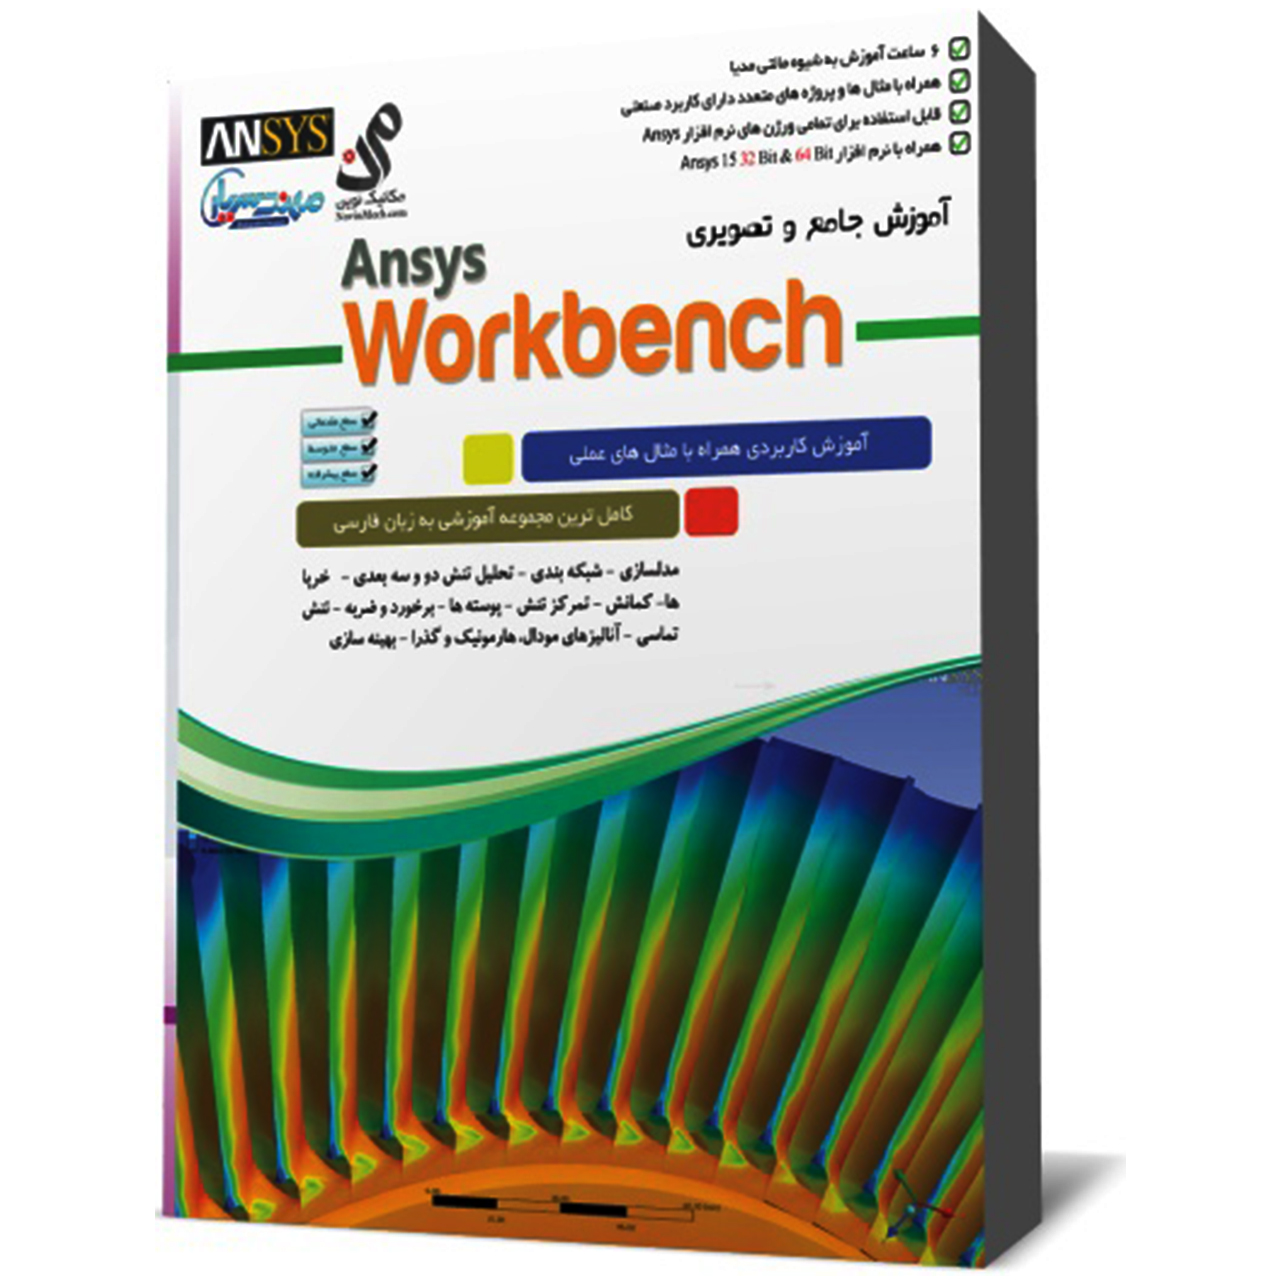 مجموعه آموزشی تحلیل مکانیکی با نرم افزار Ansys Workbench نشر مهندس یار 